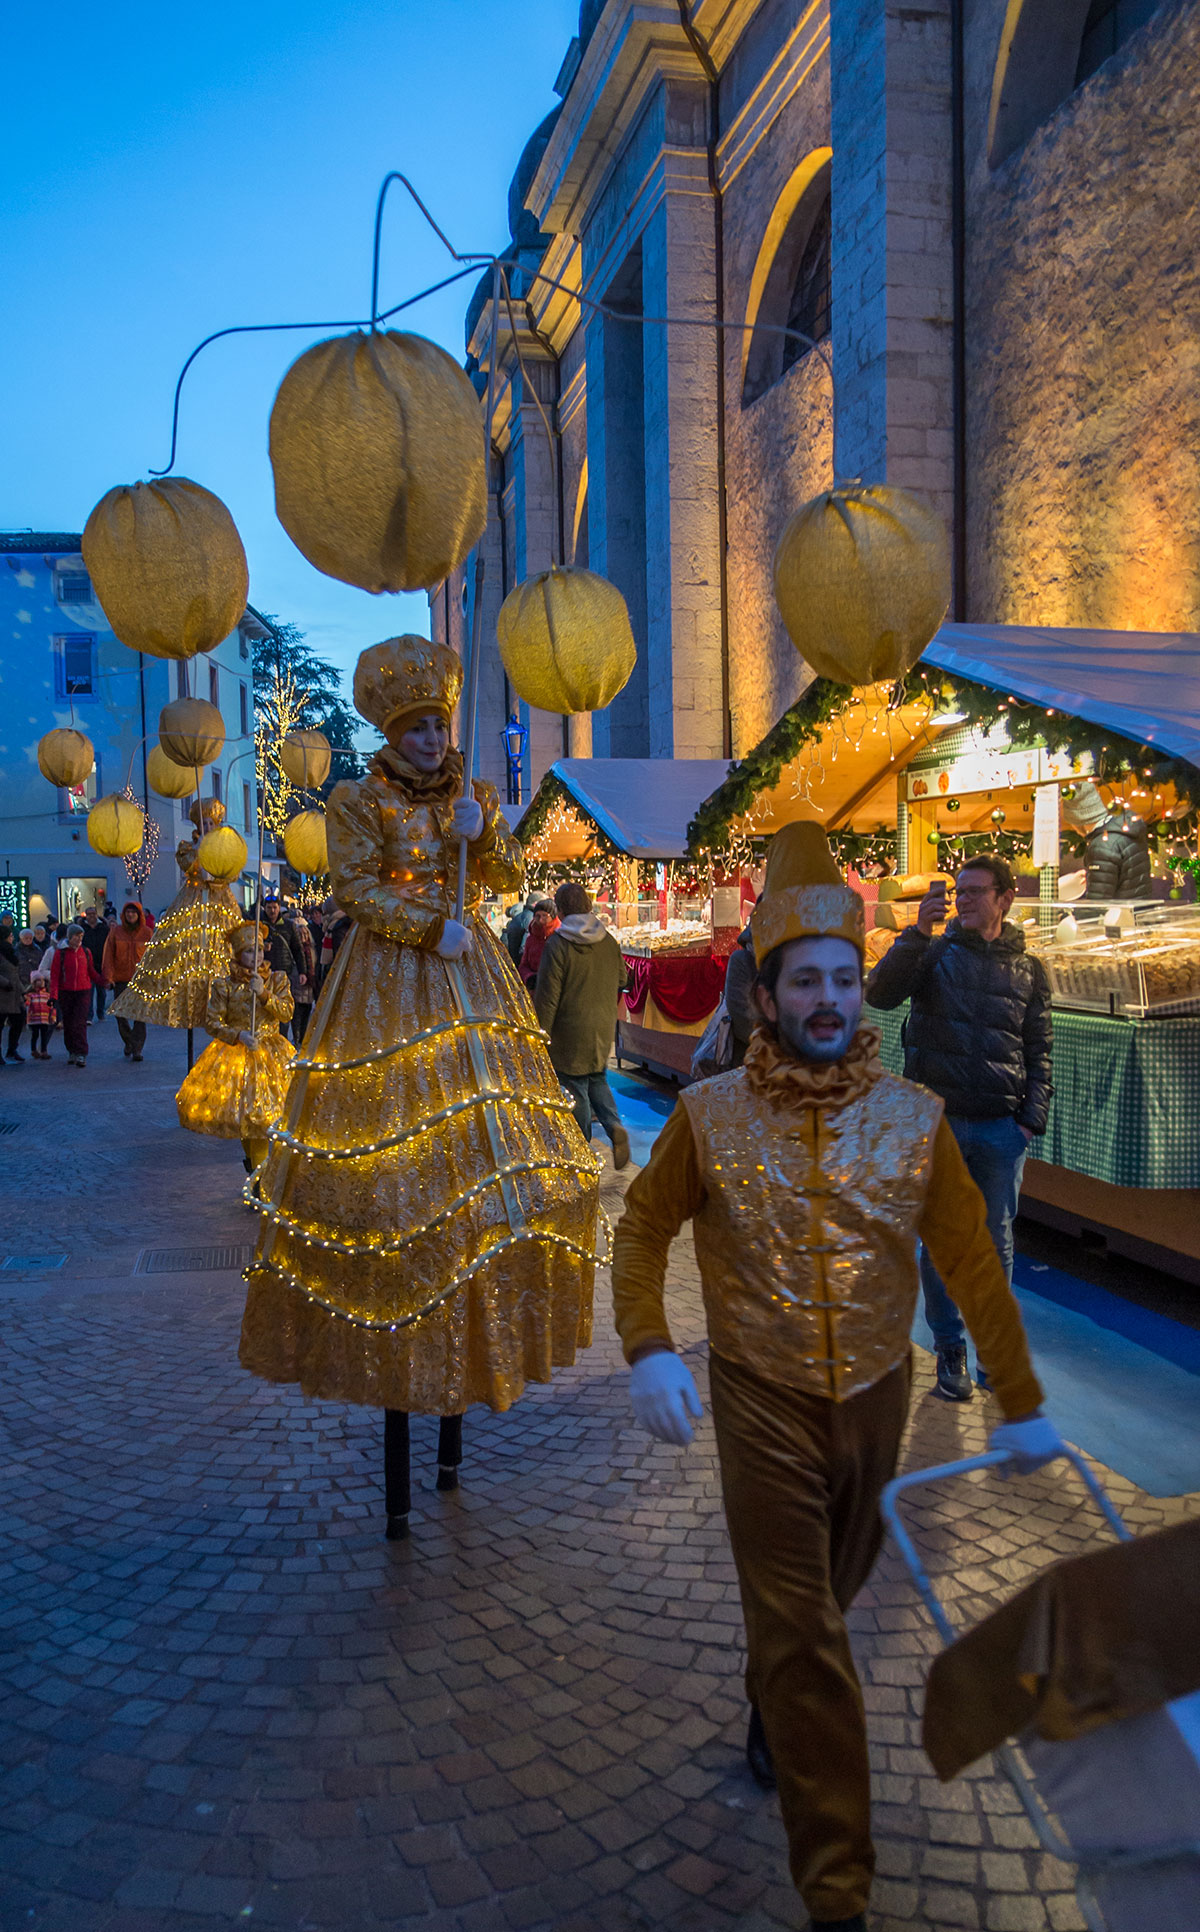 Weihnachtsmarkt in Arco mit Stelzen Läufern und Lampions